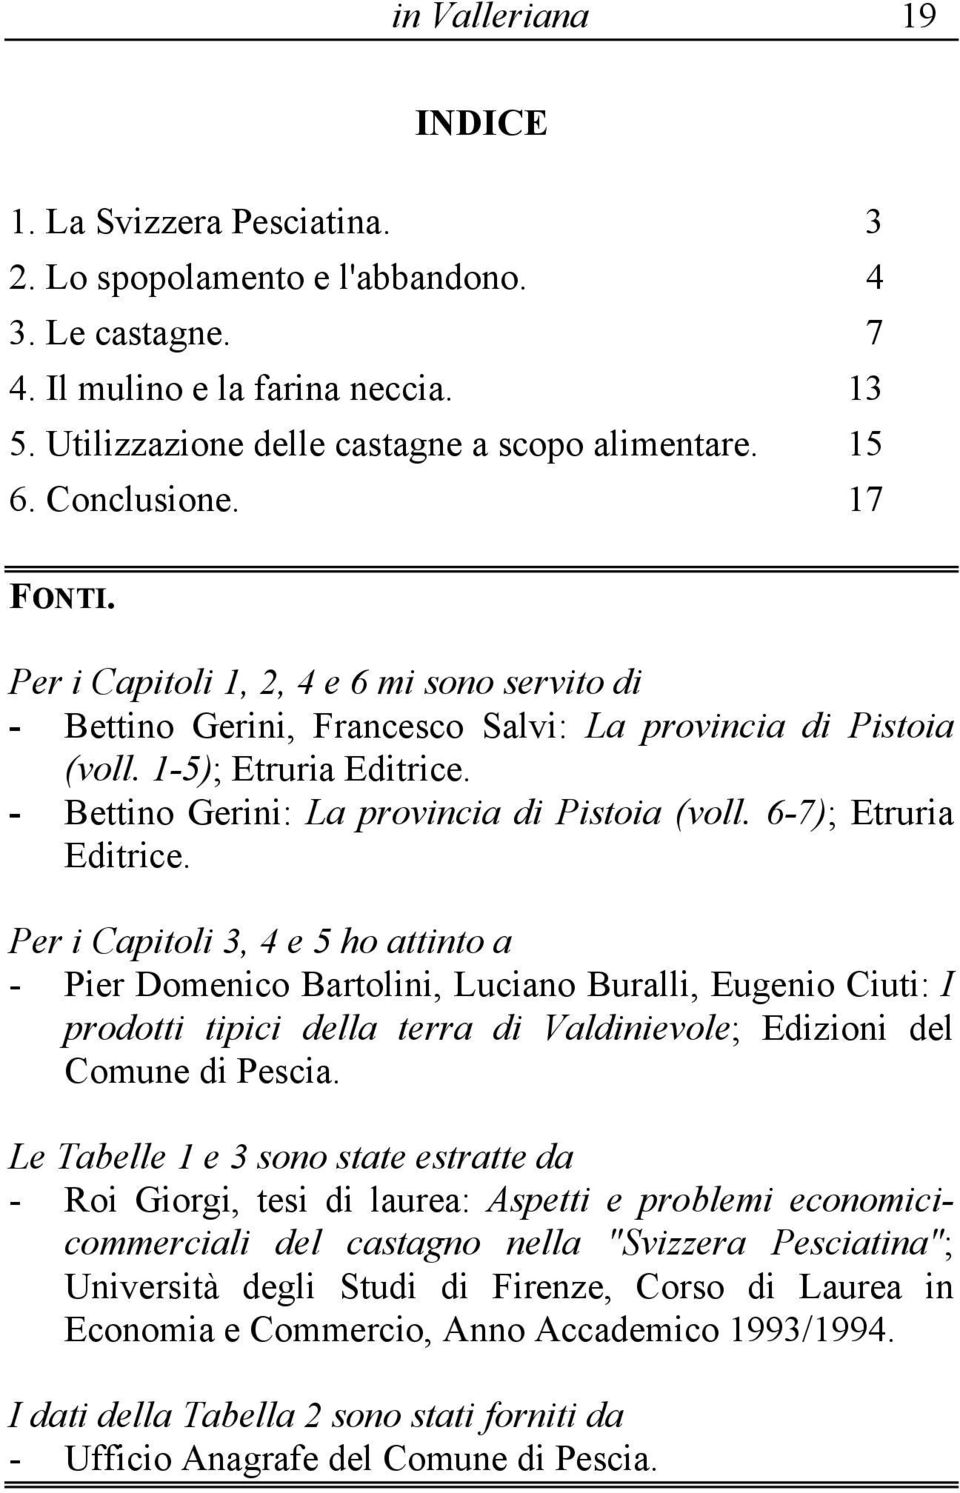 - Bettino Gerini: La provincia di Pistoia (voll. 6-7); Etruria Editrice.